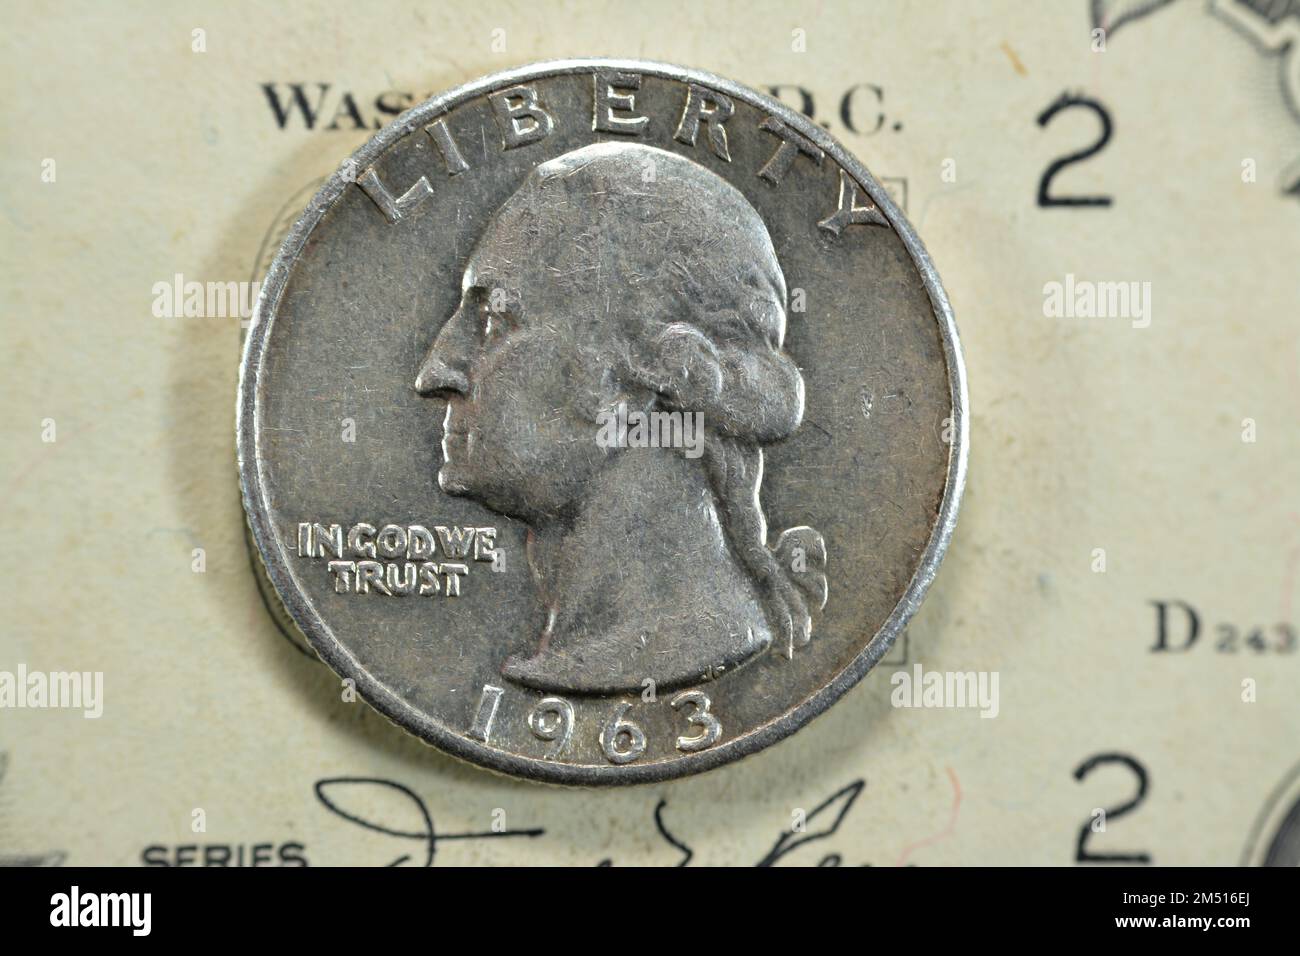 La moneta americana del quarto del dollaro, 25 venticinque centesimi la serie 1963 caratterizza George Washington, il padre fondatore e 1st presidente degli Stati Uniti di A. Foto Stock